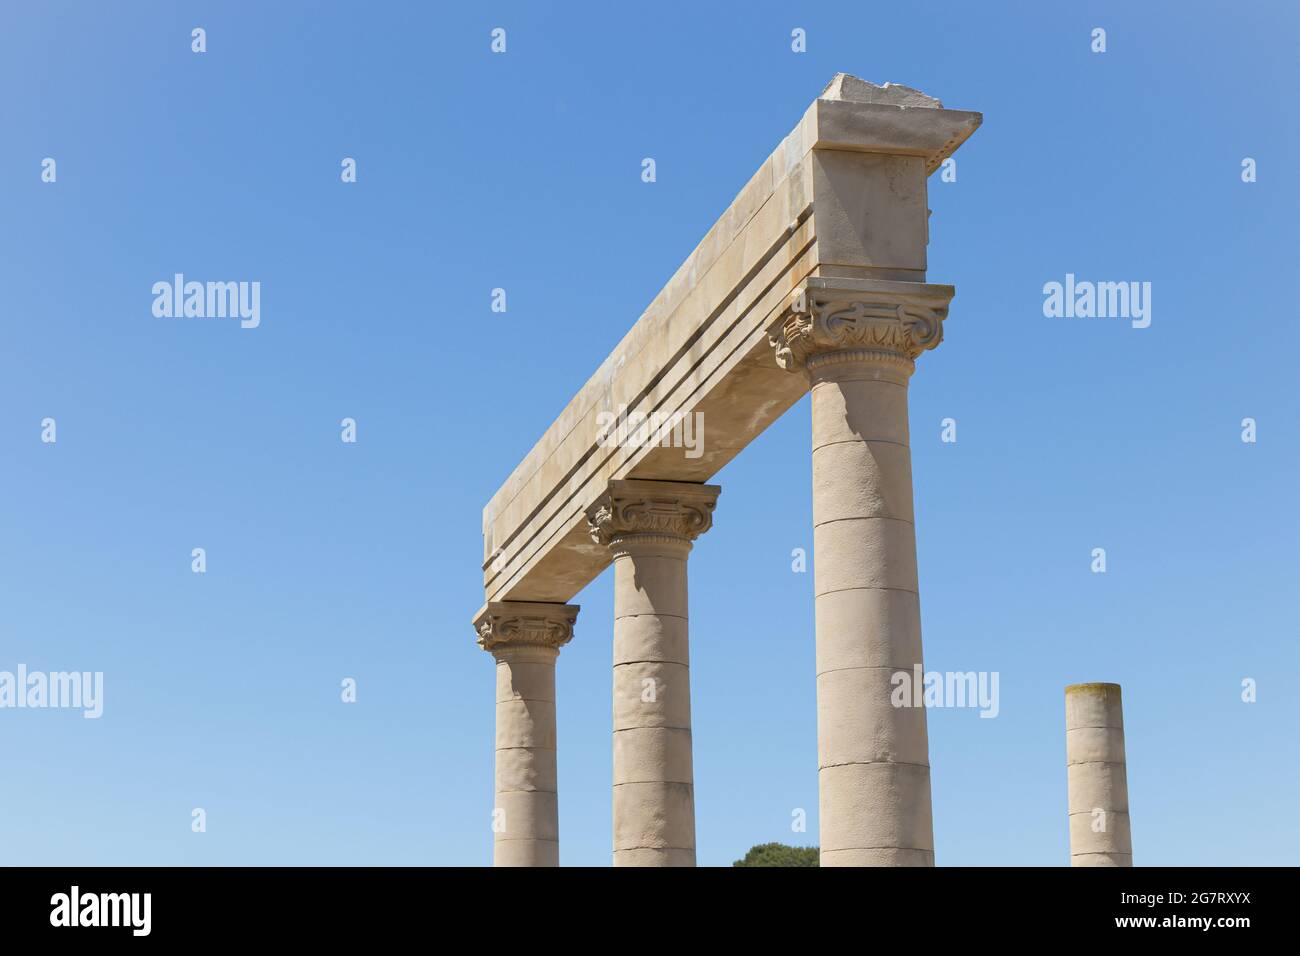 Colonne di ordine ionico, dettaglio architettonico di reale antica città greco-romana Empuries Foto Stock